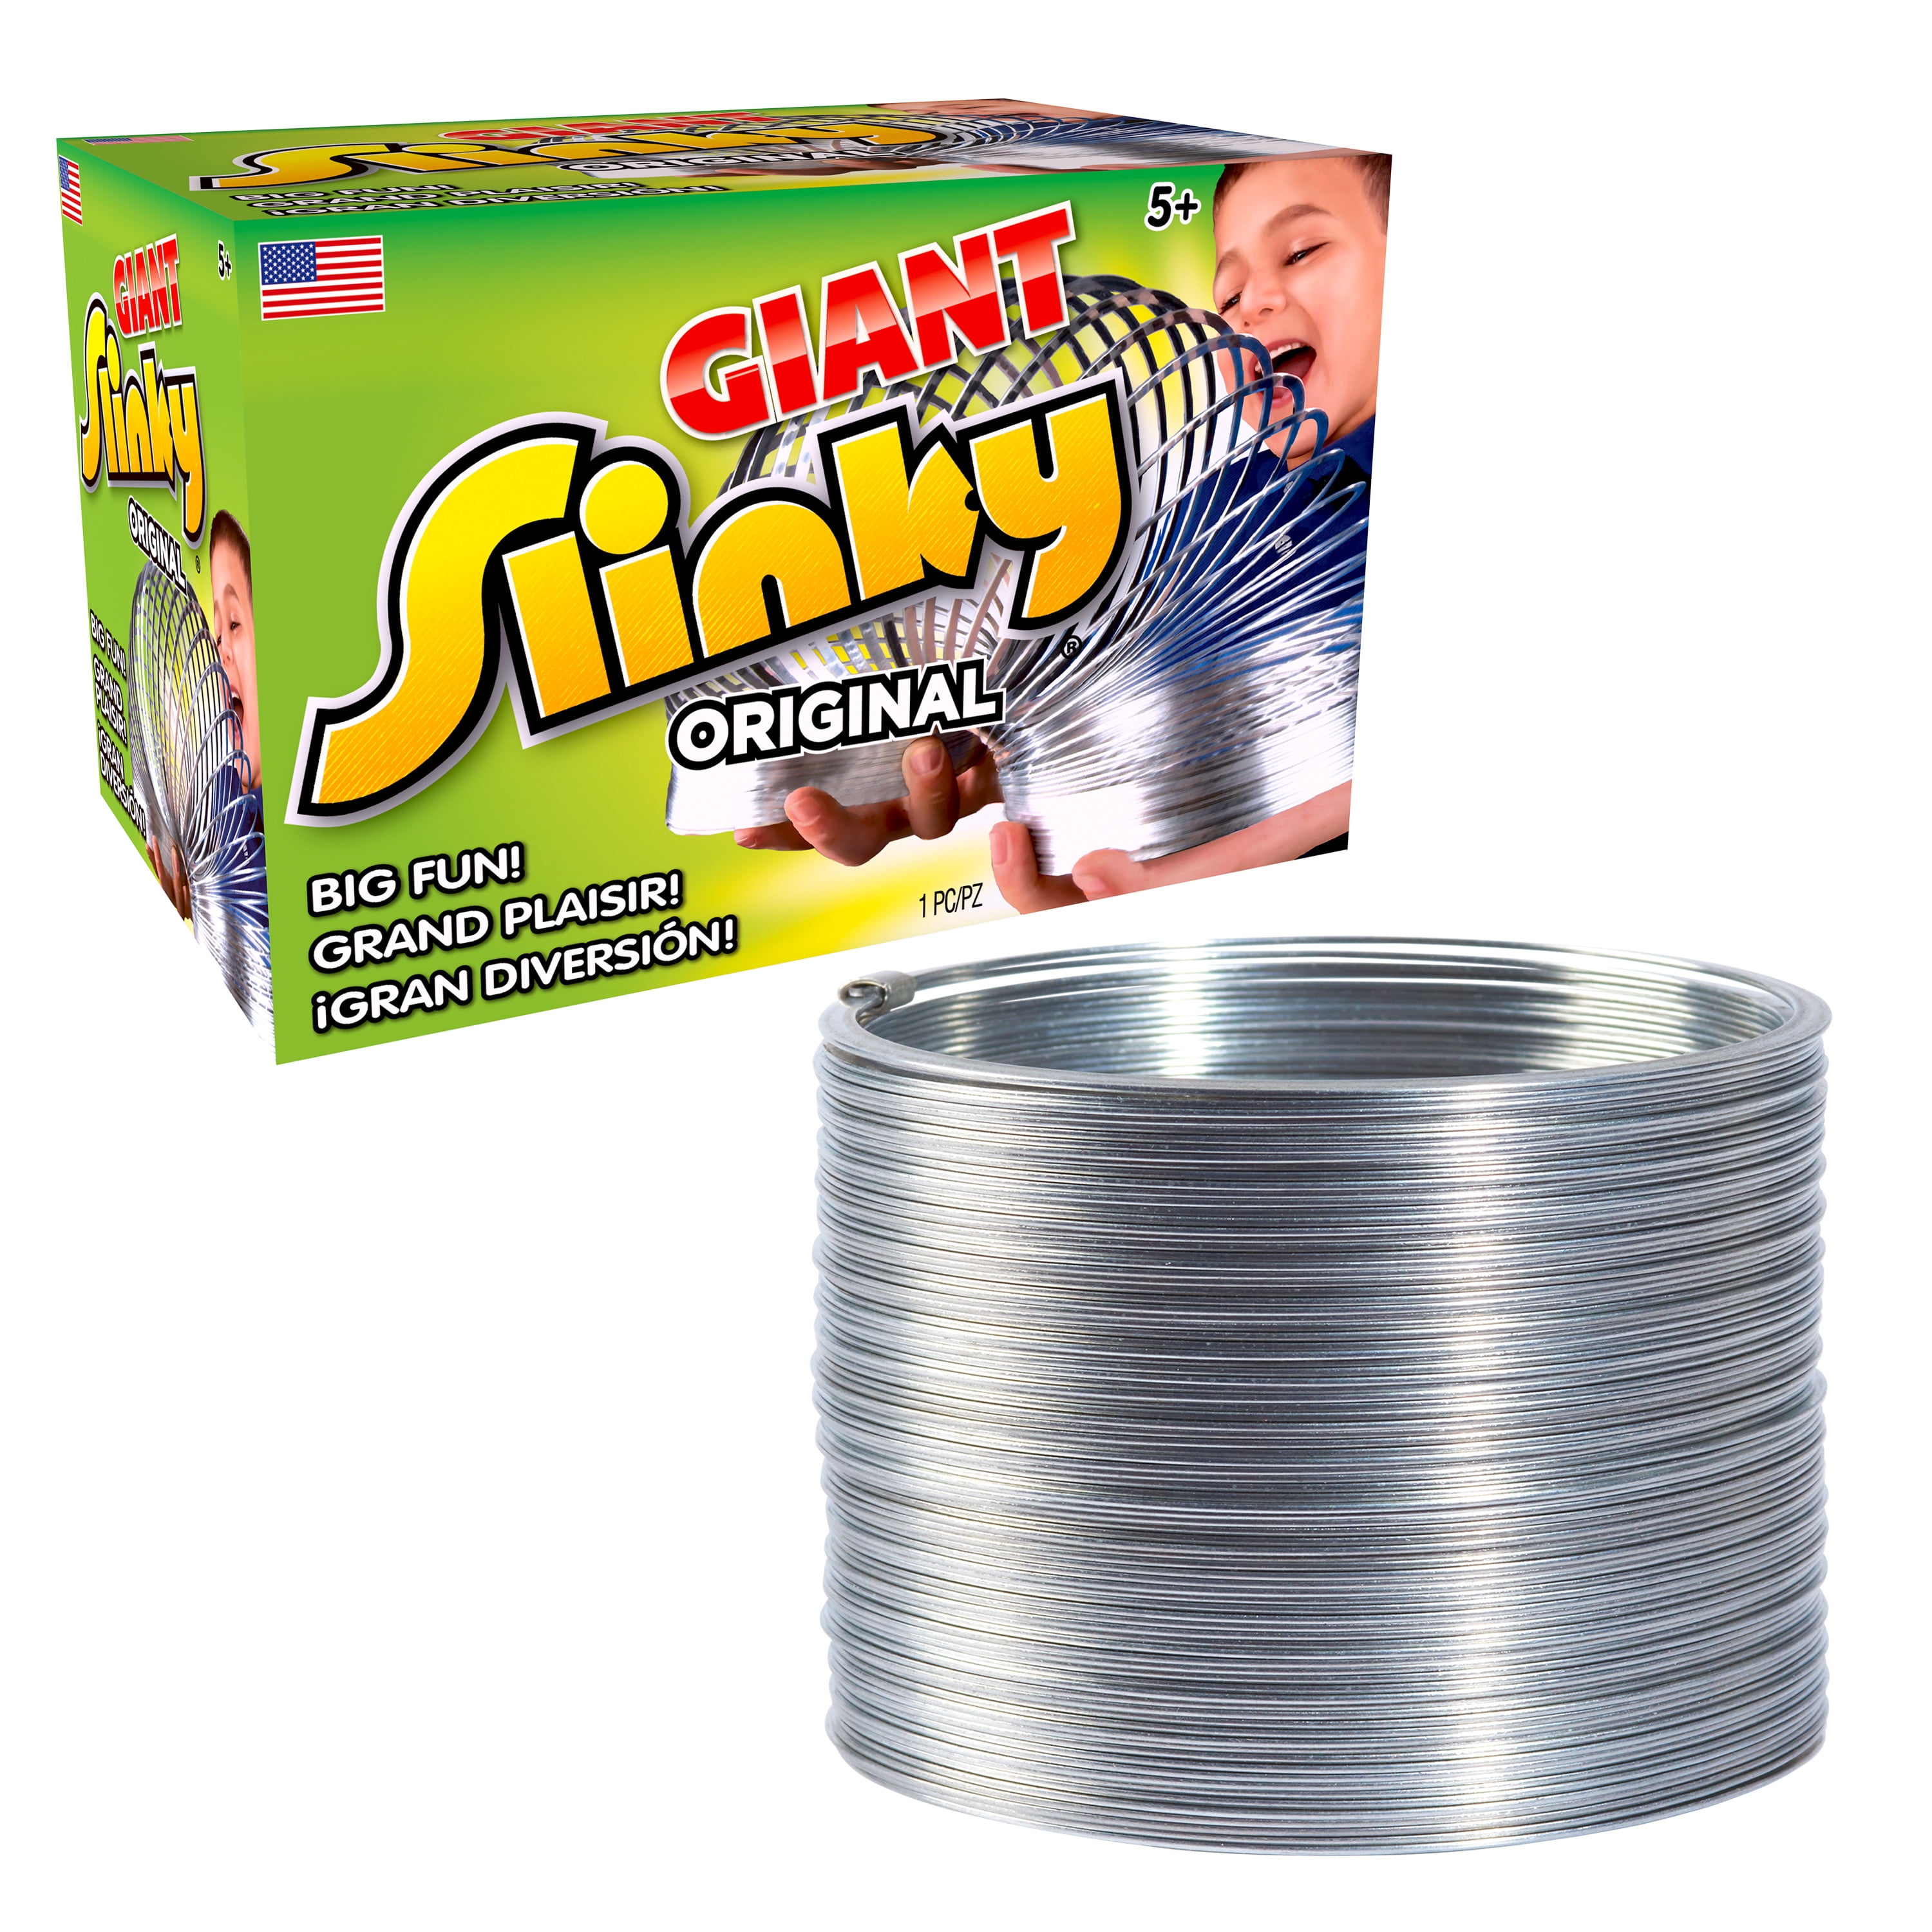 Giant Metal Value Pack! Slinky Original JR